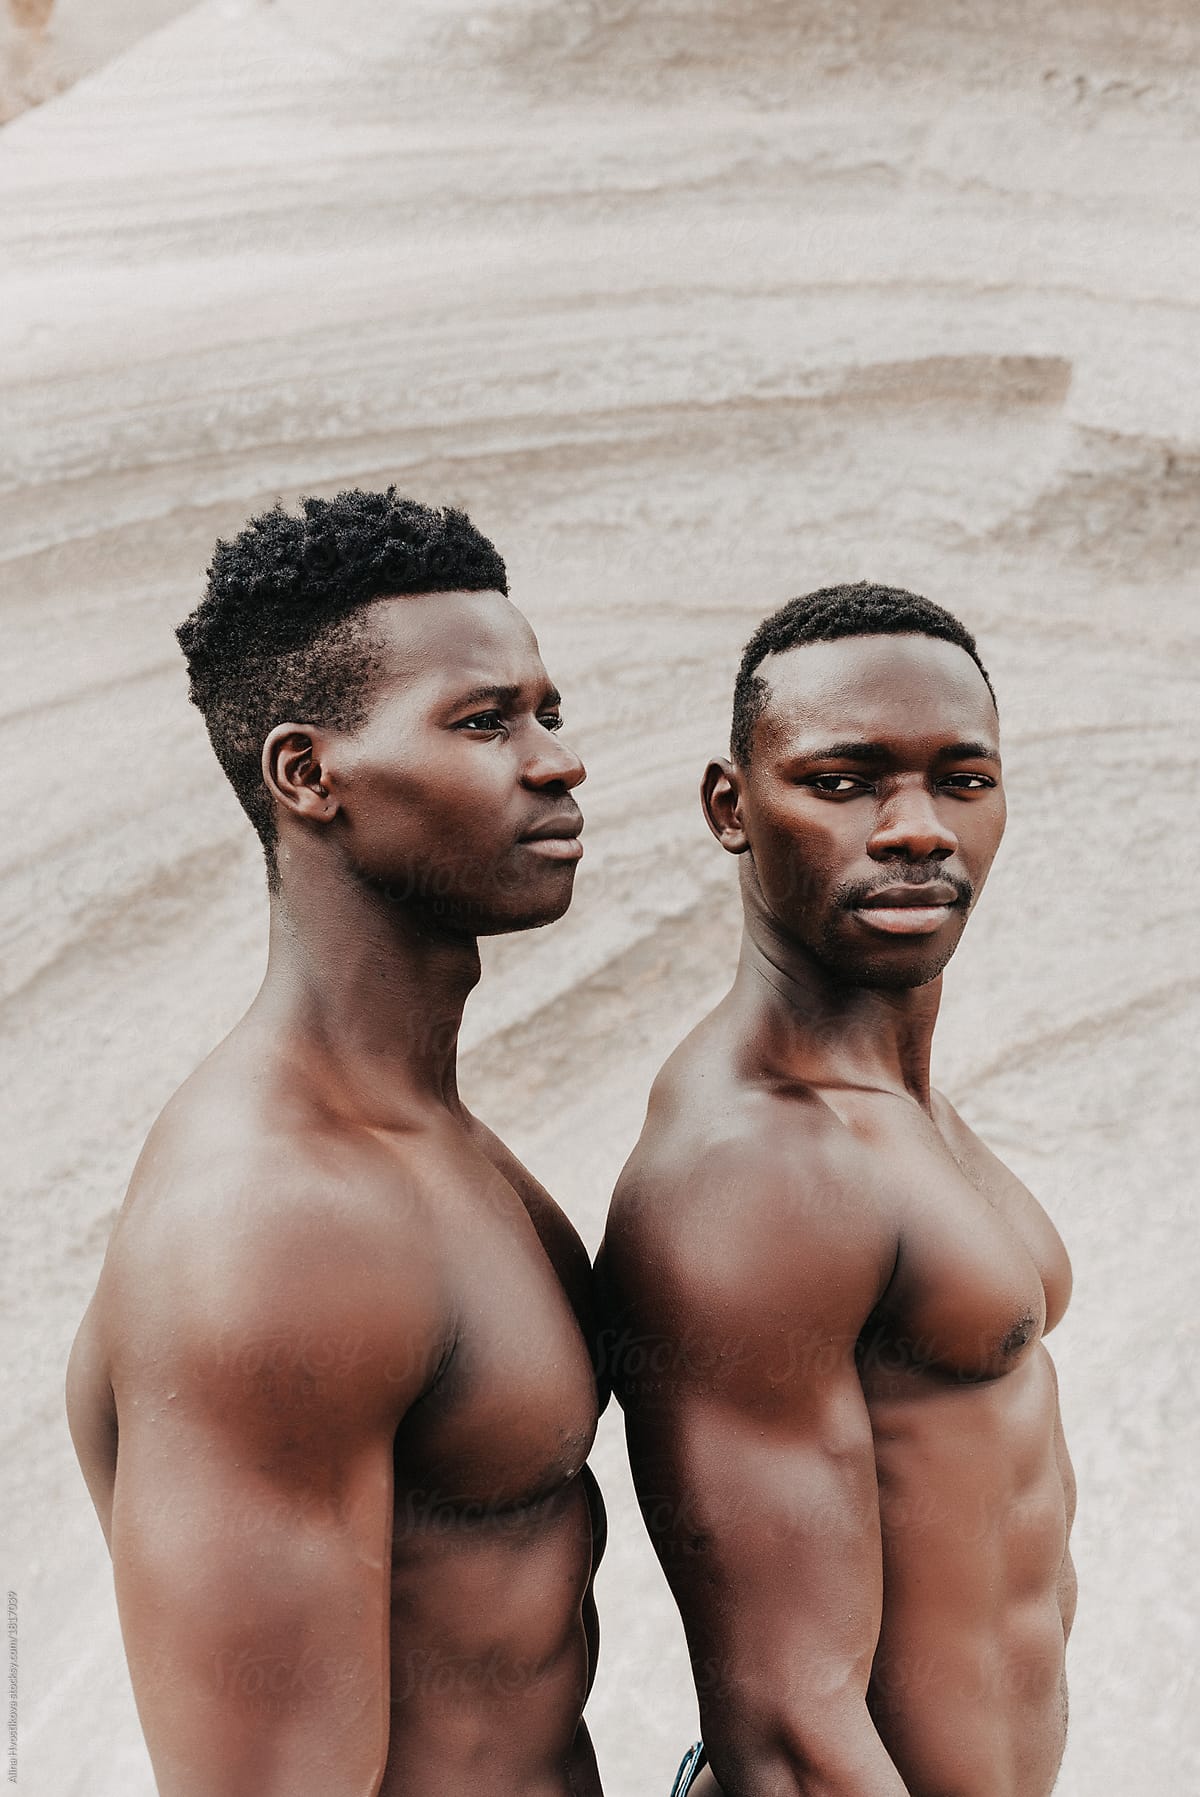 Two Ethnic Men by Alina Hvostikova.